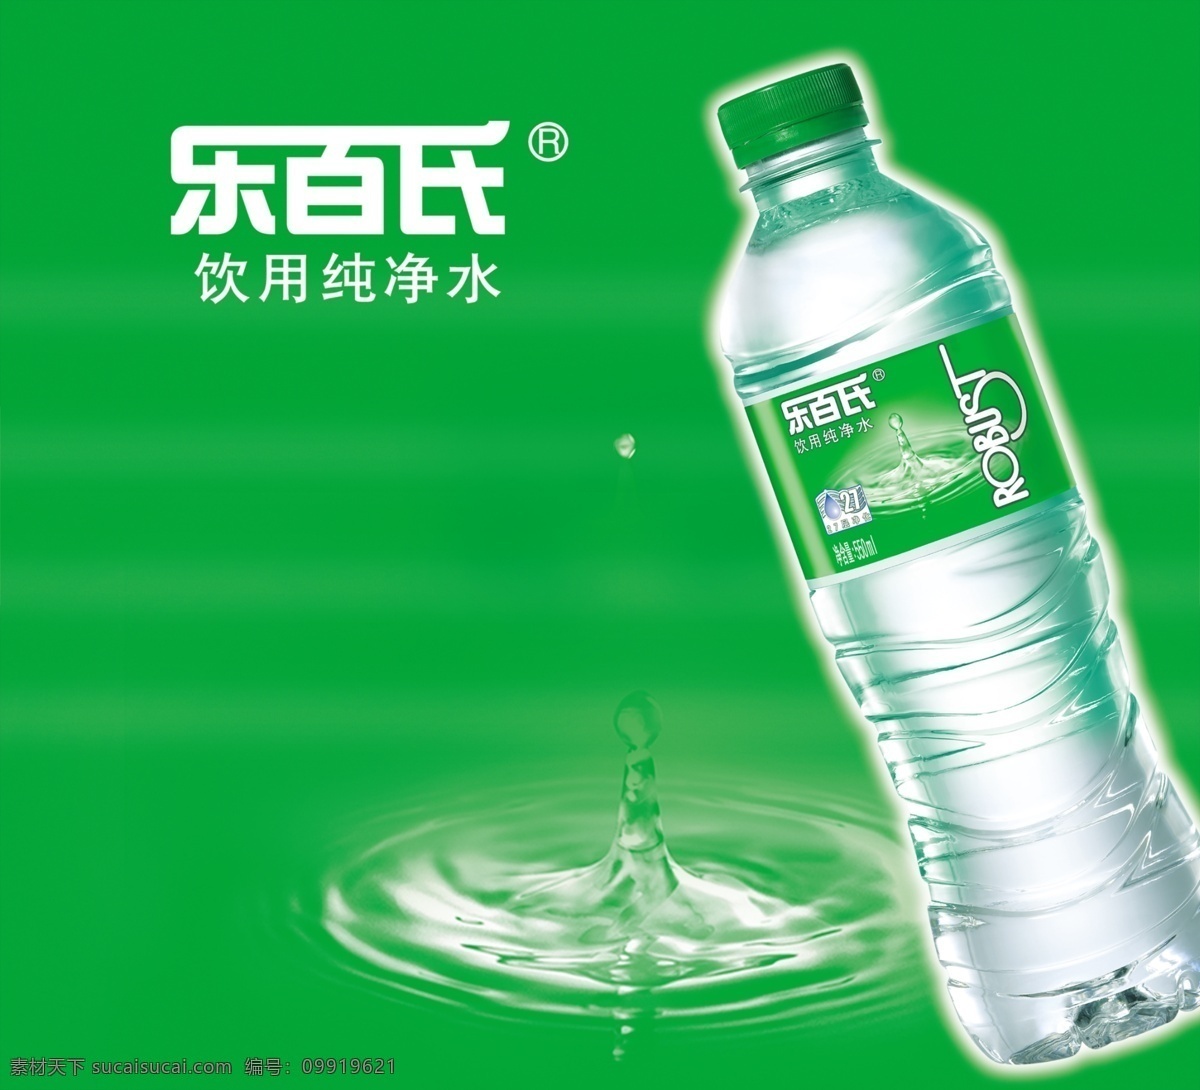 乐百氏水 乐百氏 水 水纹 水滴 瓶子 广告模板 广告设计模板 源文件库